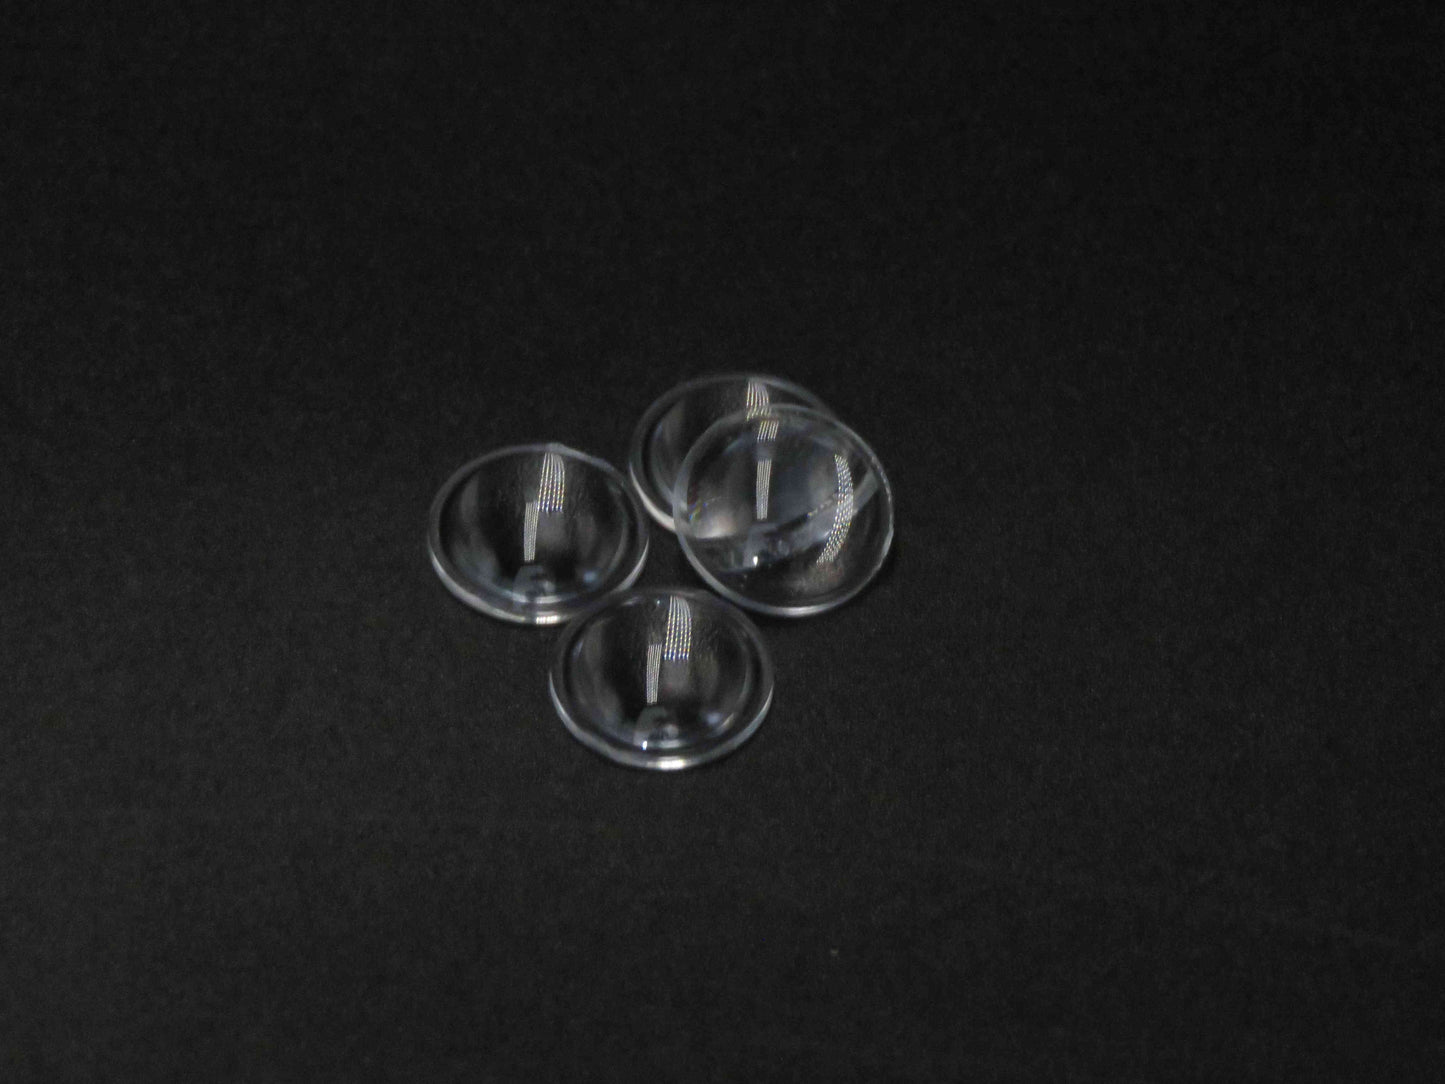 Dodávka Projekční čočka Plano Convex Glass PMMA asférická čočka pro projekci VR